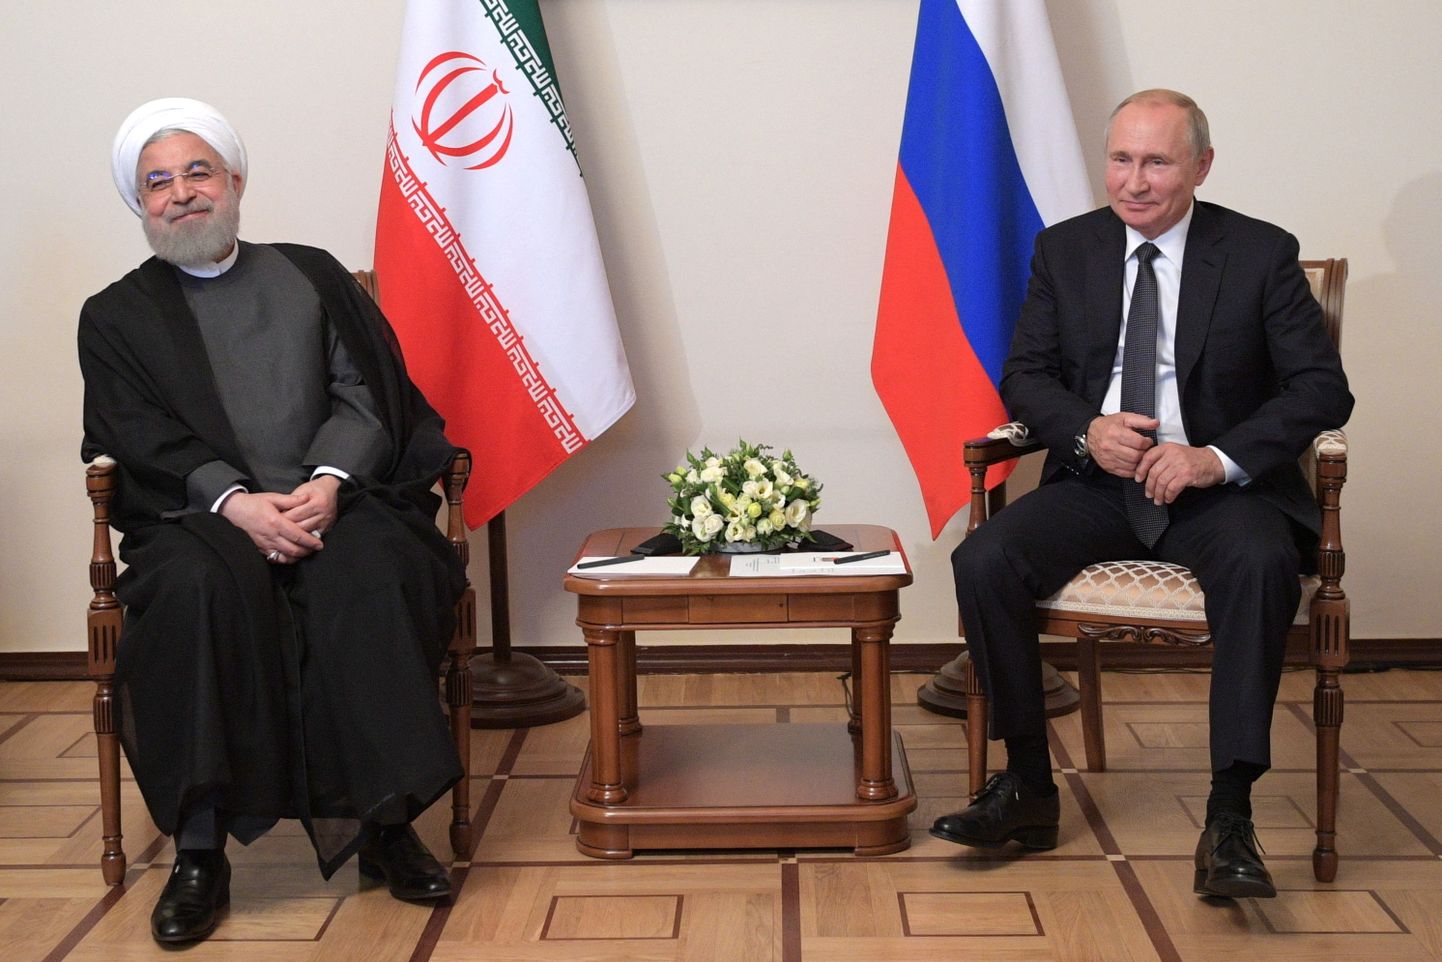 Президент России Владимир Путин встречался с иранским президентом буквально на днях, 1 октября в Ереване.